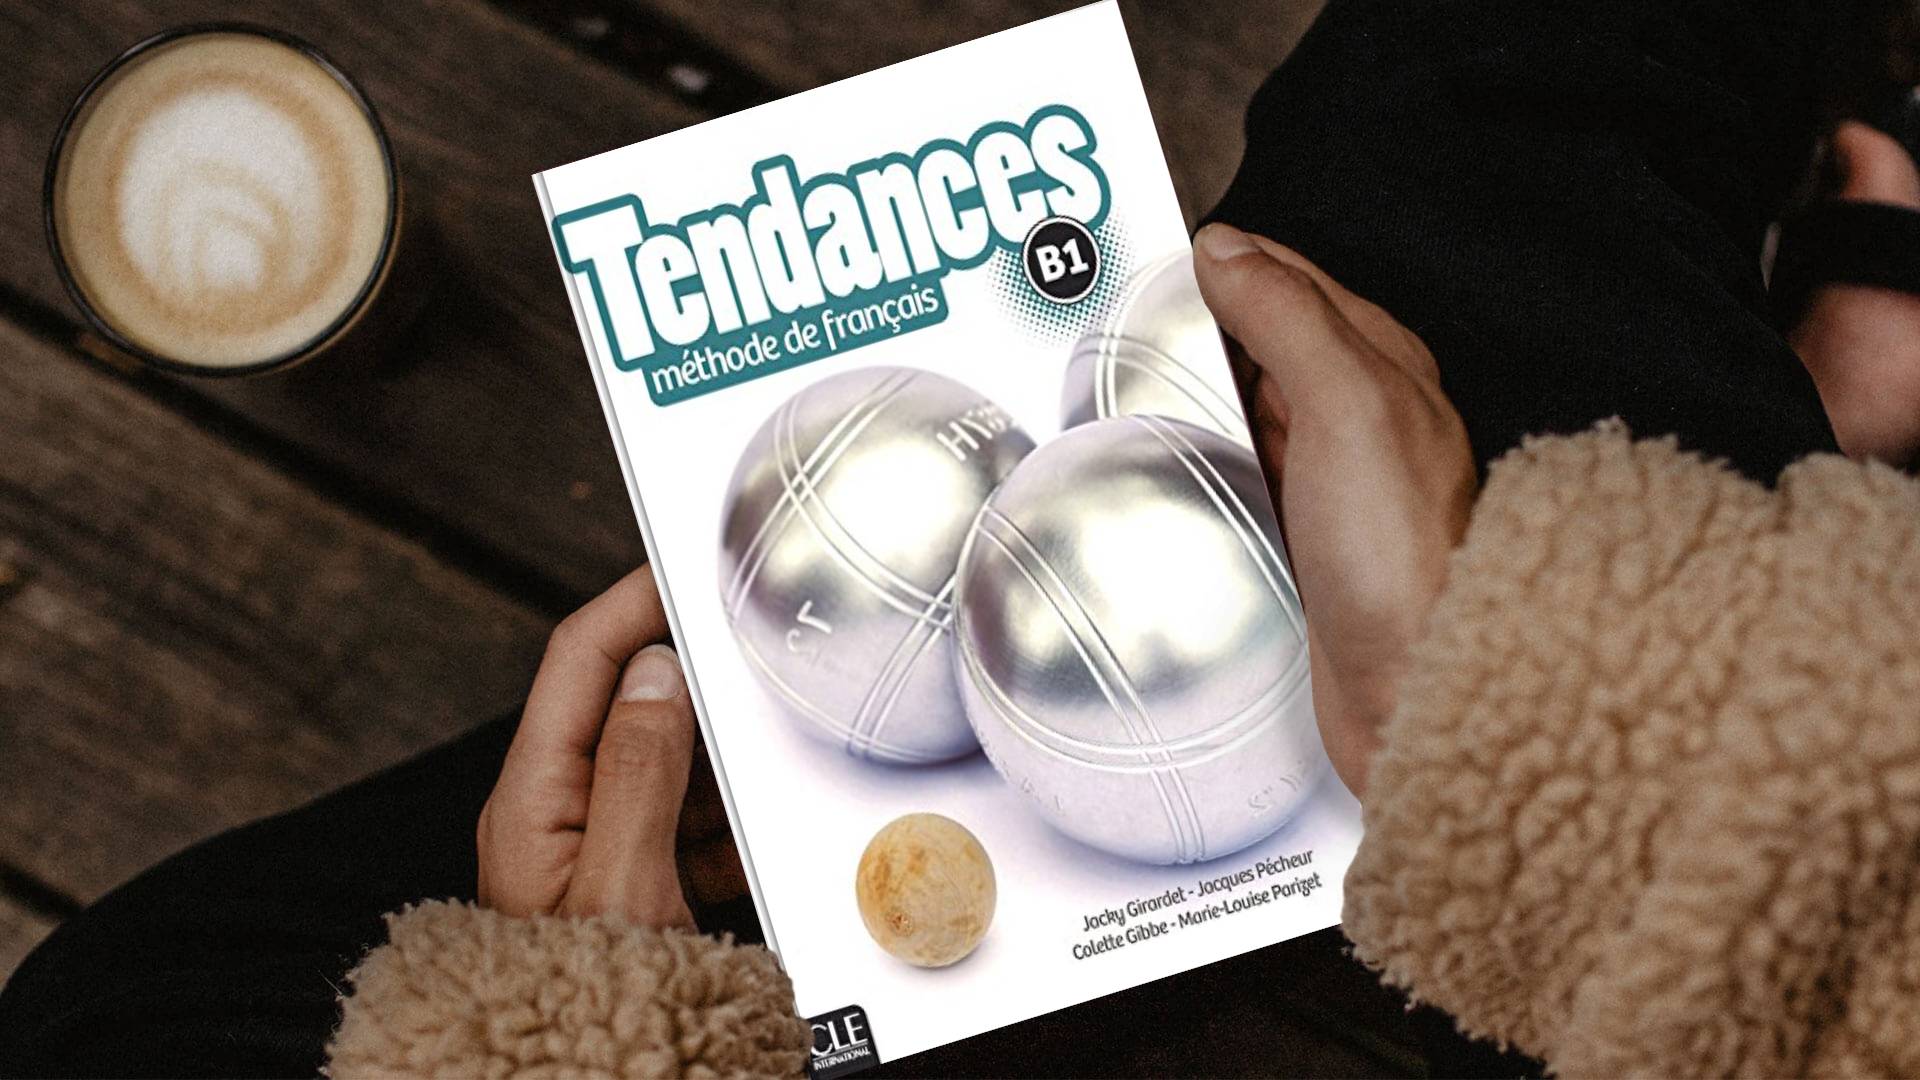 خرید کتاب زبان فرانسوی | فروشگاه اینترنتی کتاب زبان فرانسوی | Tendances B1 | تاندانس سه